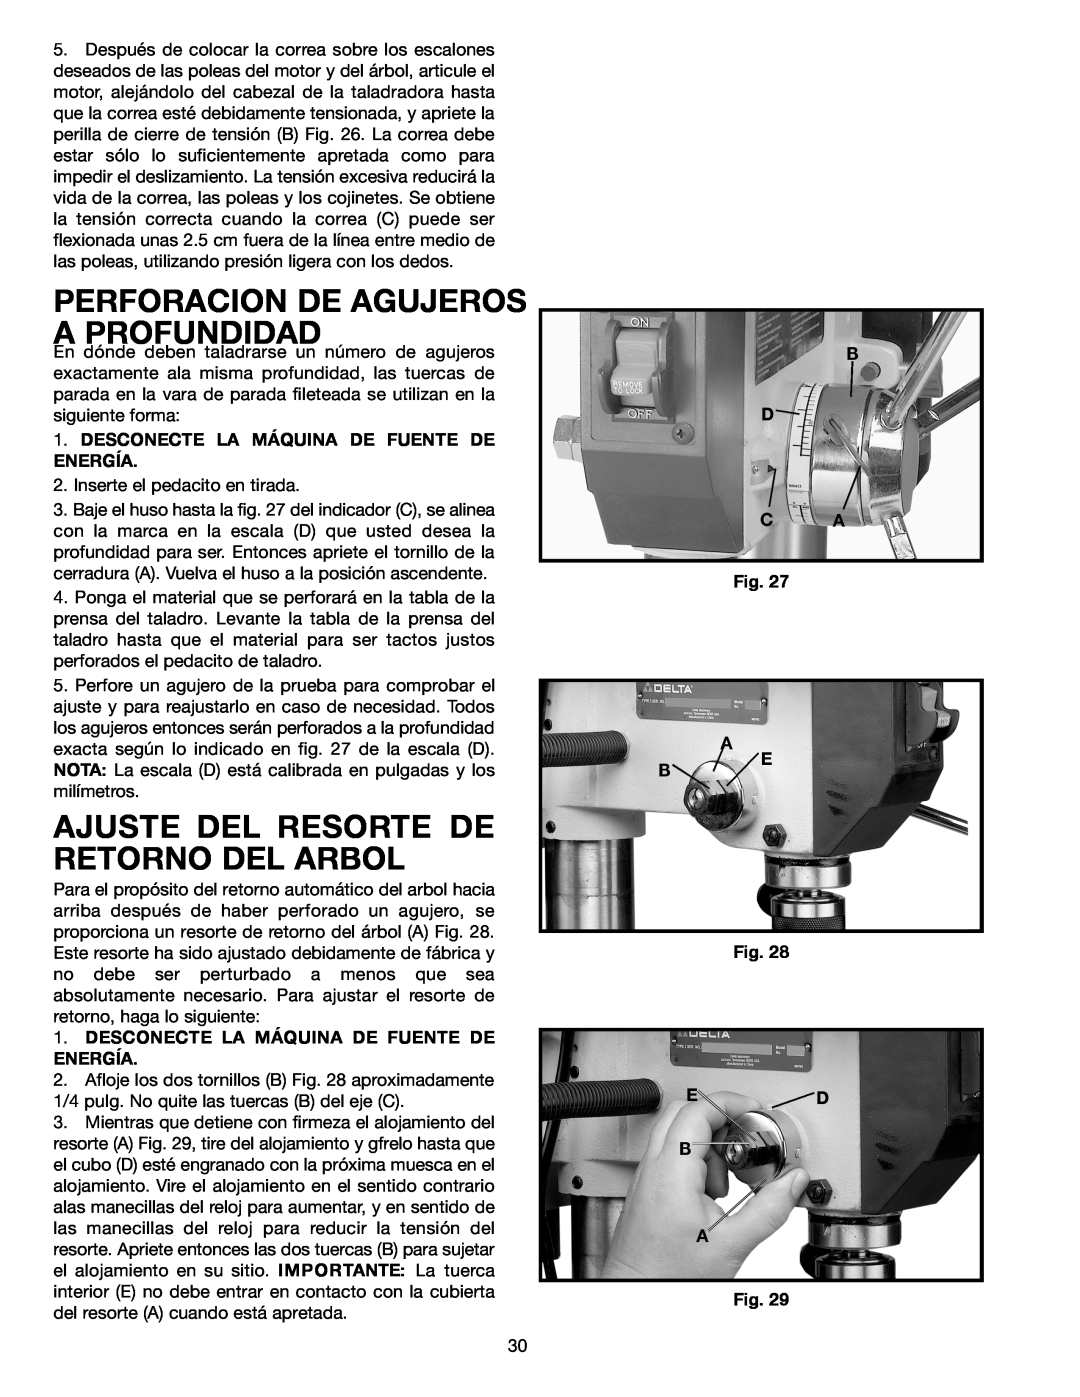 Delta SM300 warranty Perforacion De Agujeros A Profundidad, Ajuste Del Resorte De Retorno Del Arbol, B D C A, A Be, Ed B A 